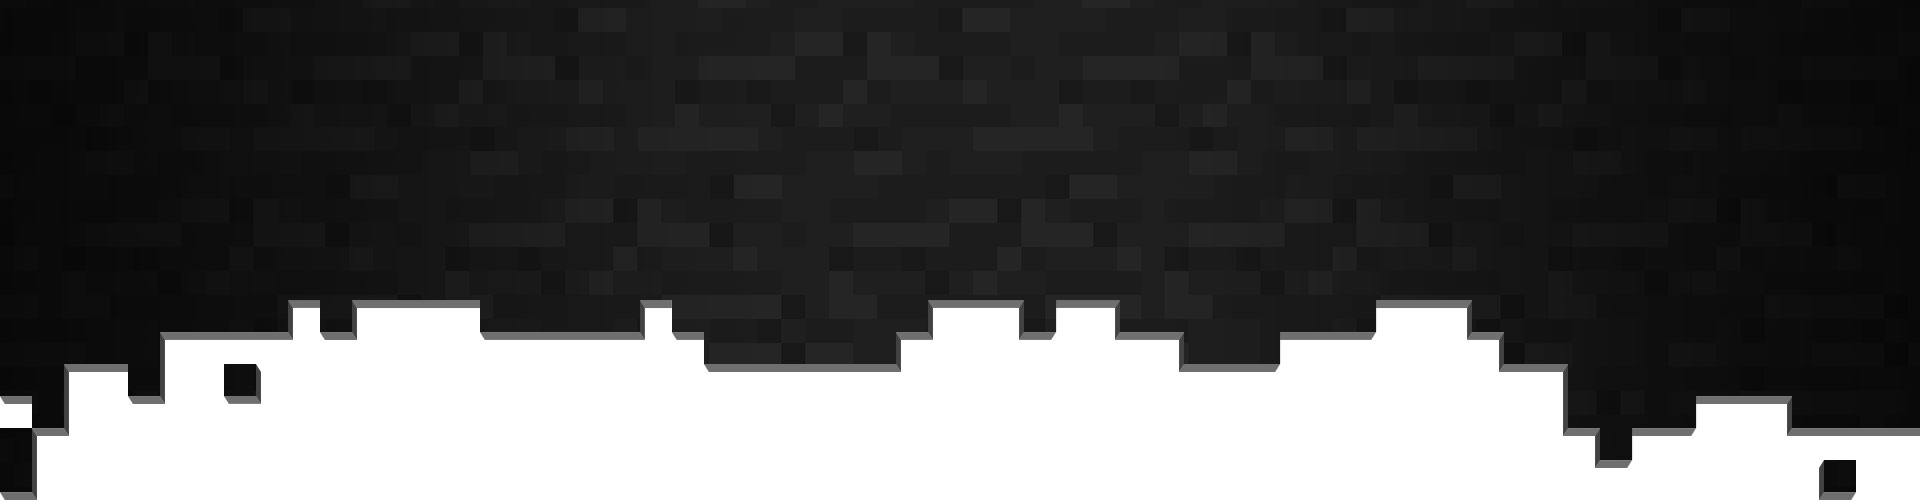 Pixels pretos e cinza